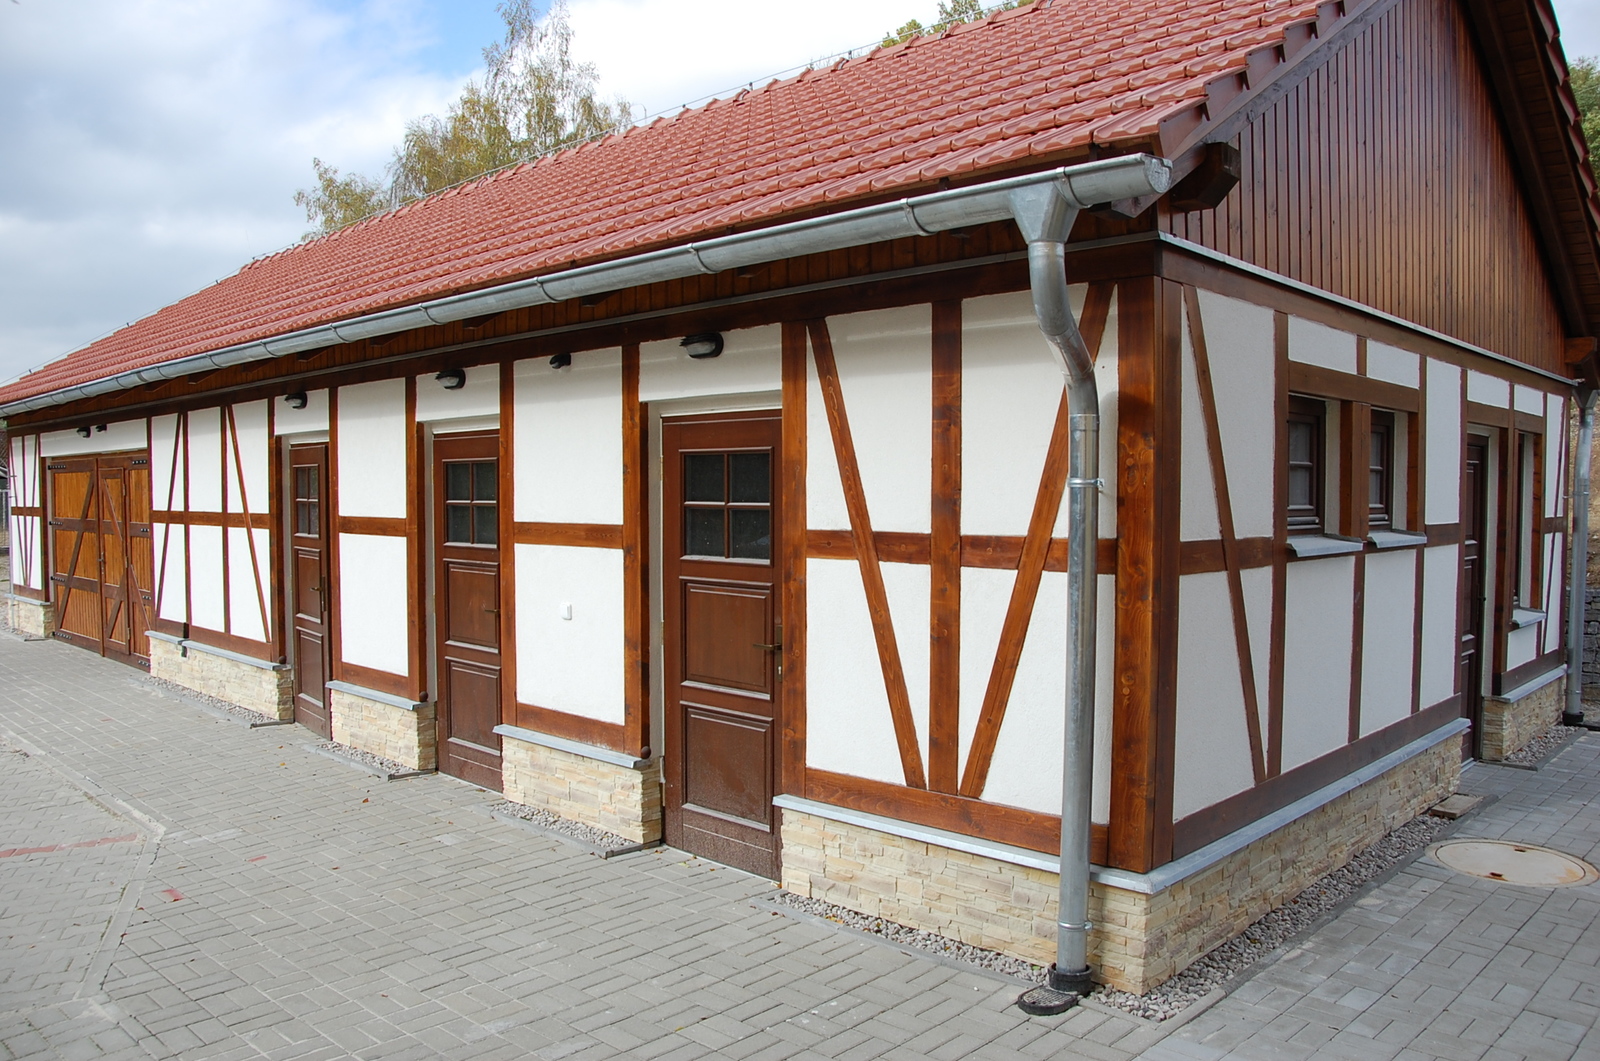 Hospodářská budova v Rudolci byla dokončena a zkolaudována